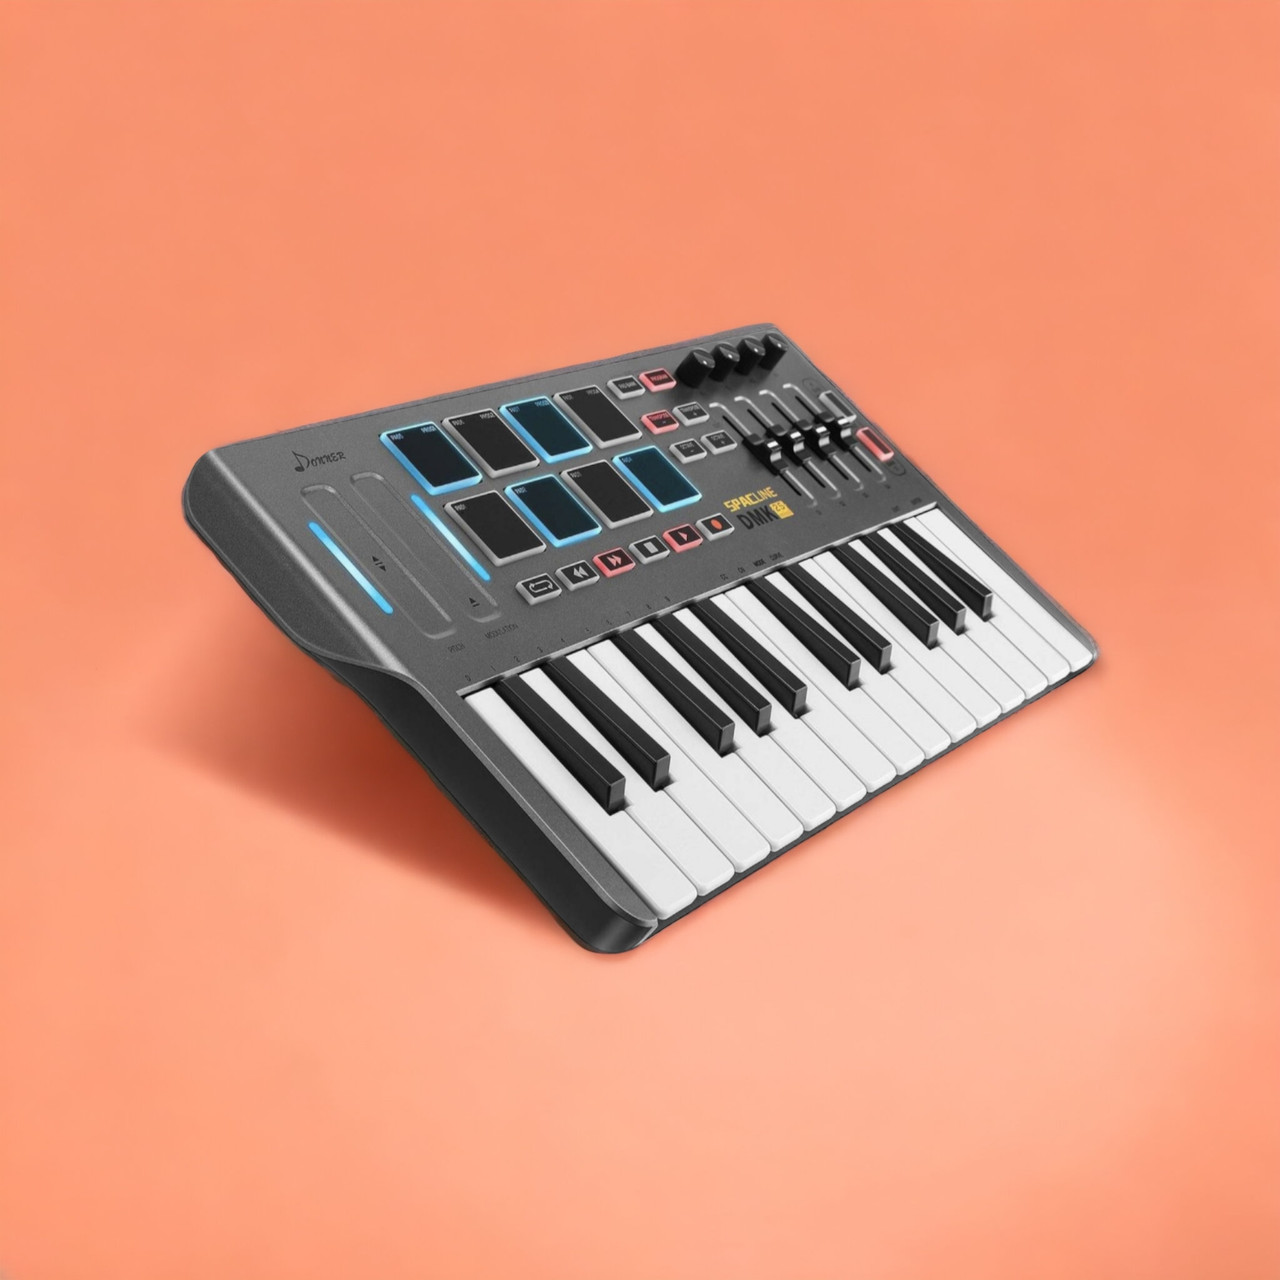 MIDI-клавіатура Donner, портативний MIDI-контролер DMK25 з 25 чутливими клавішами